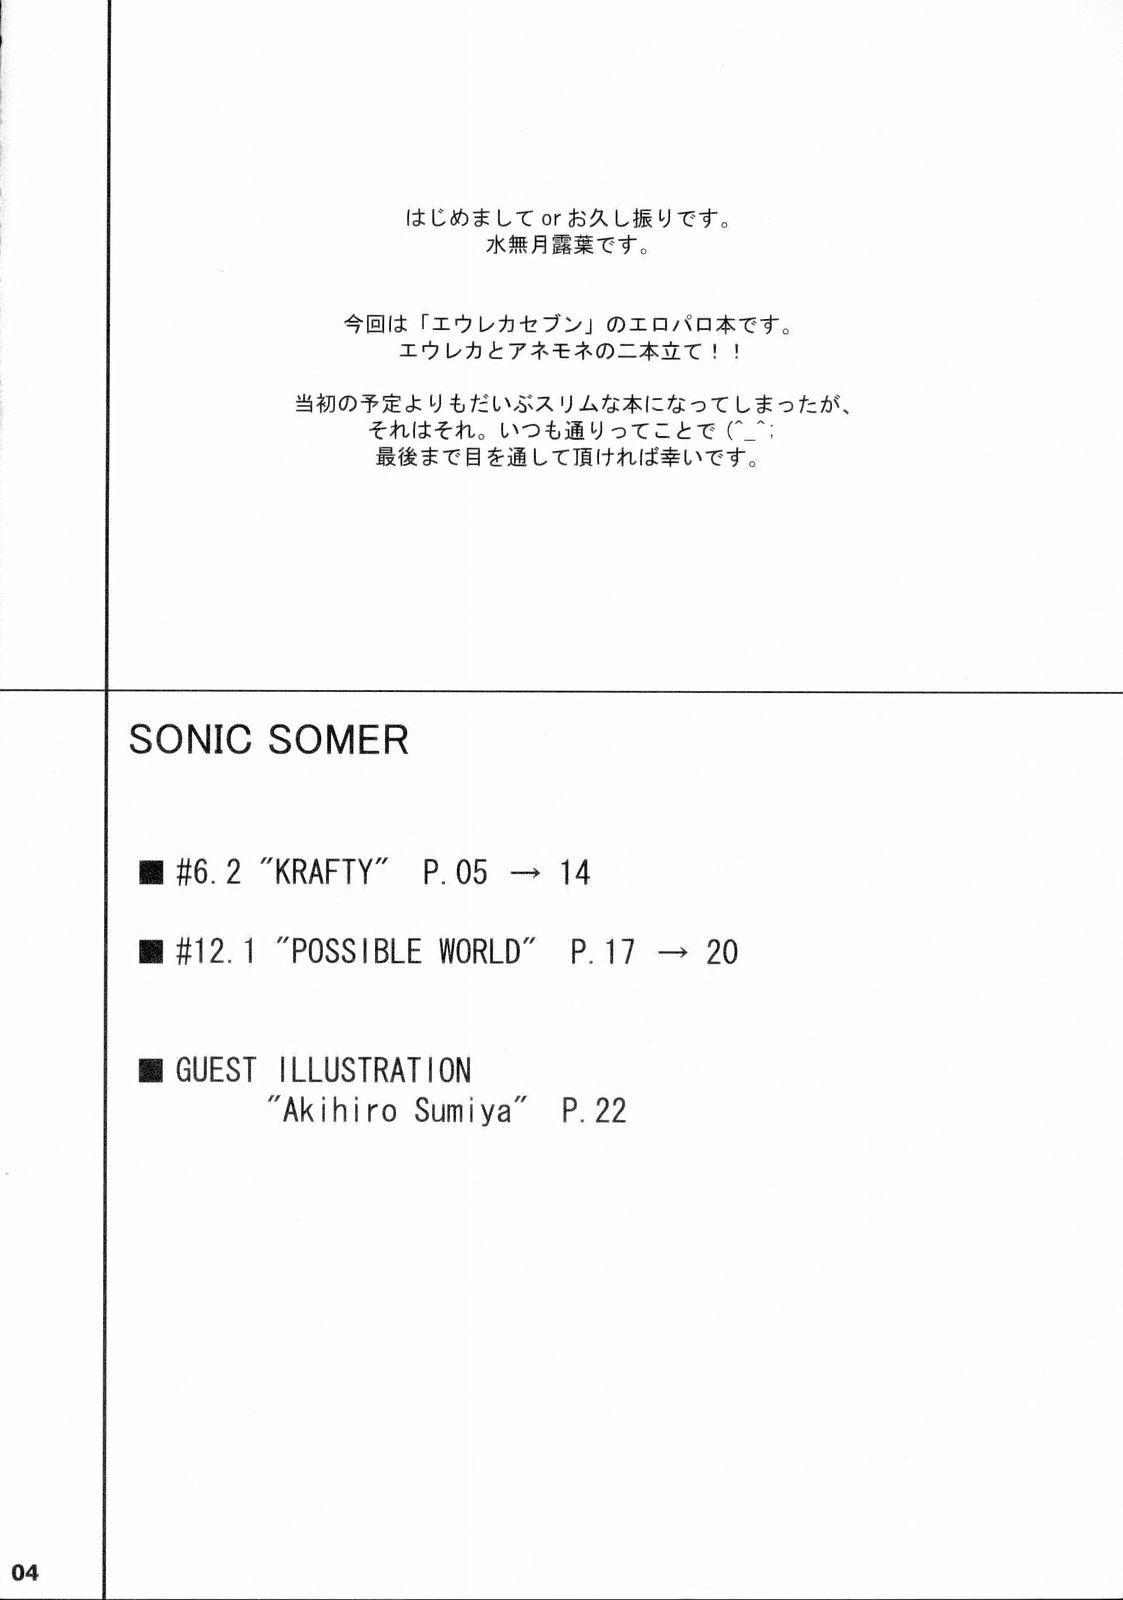 Sonic Somer 4